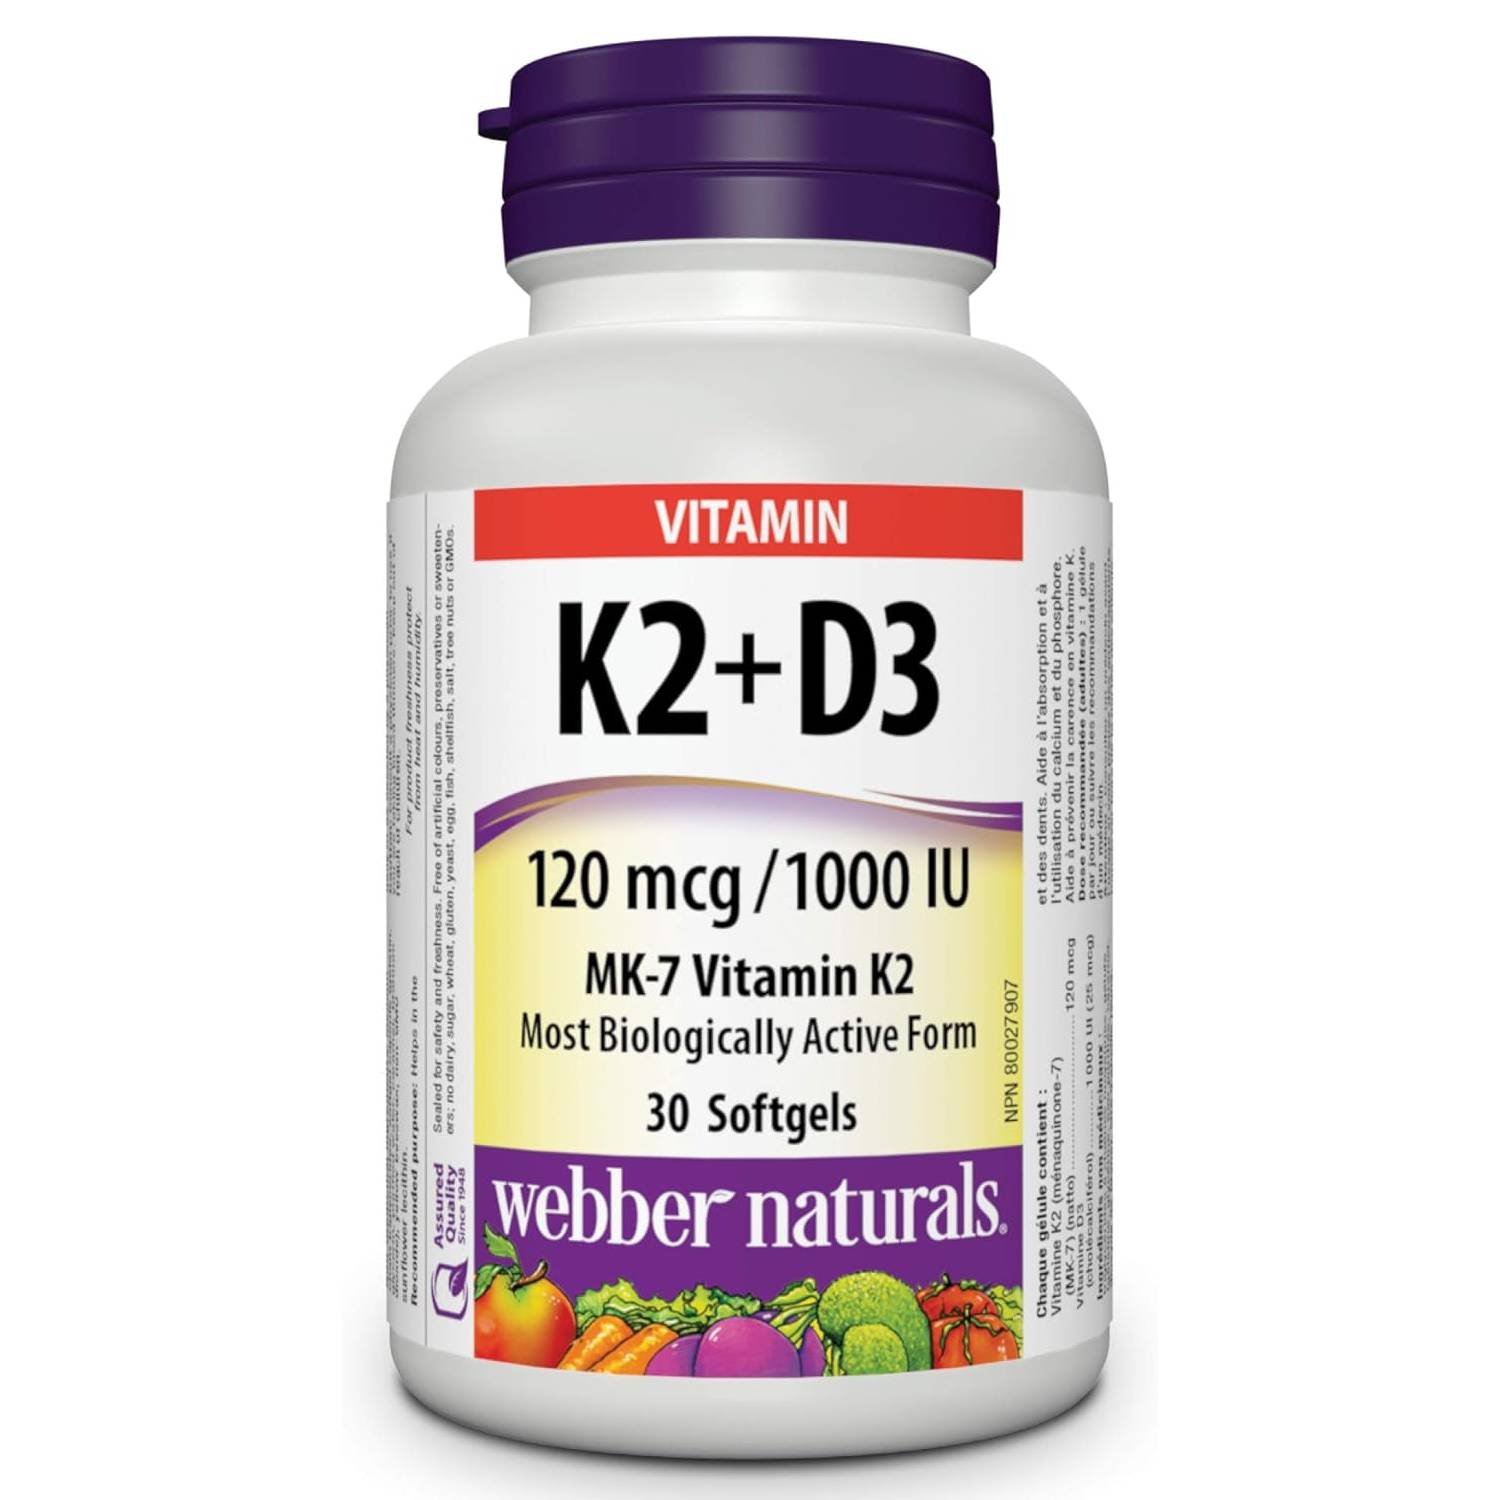 Webber Naturals Vitamin K2 + D3 120 mcg/1000 IU 30 Softgels